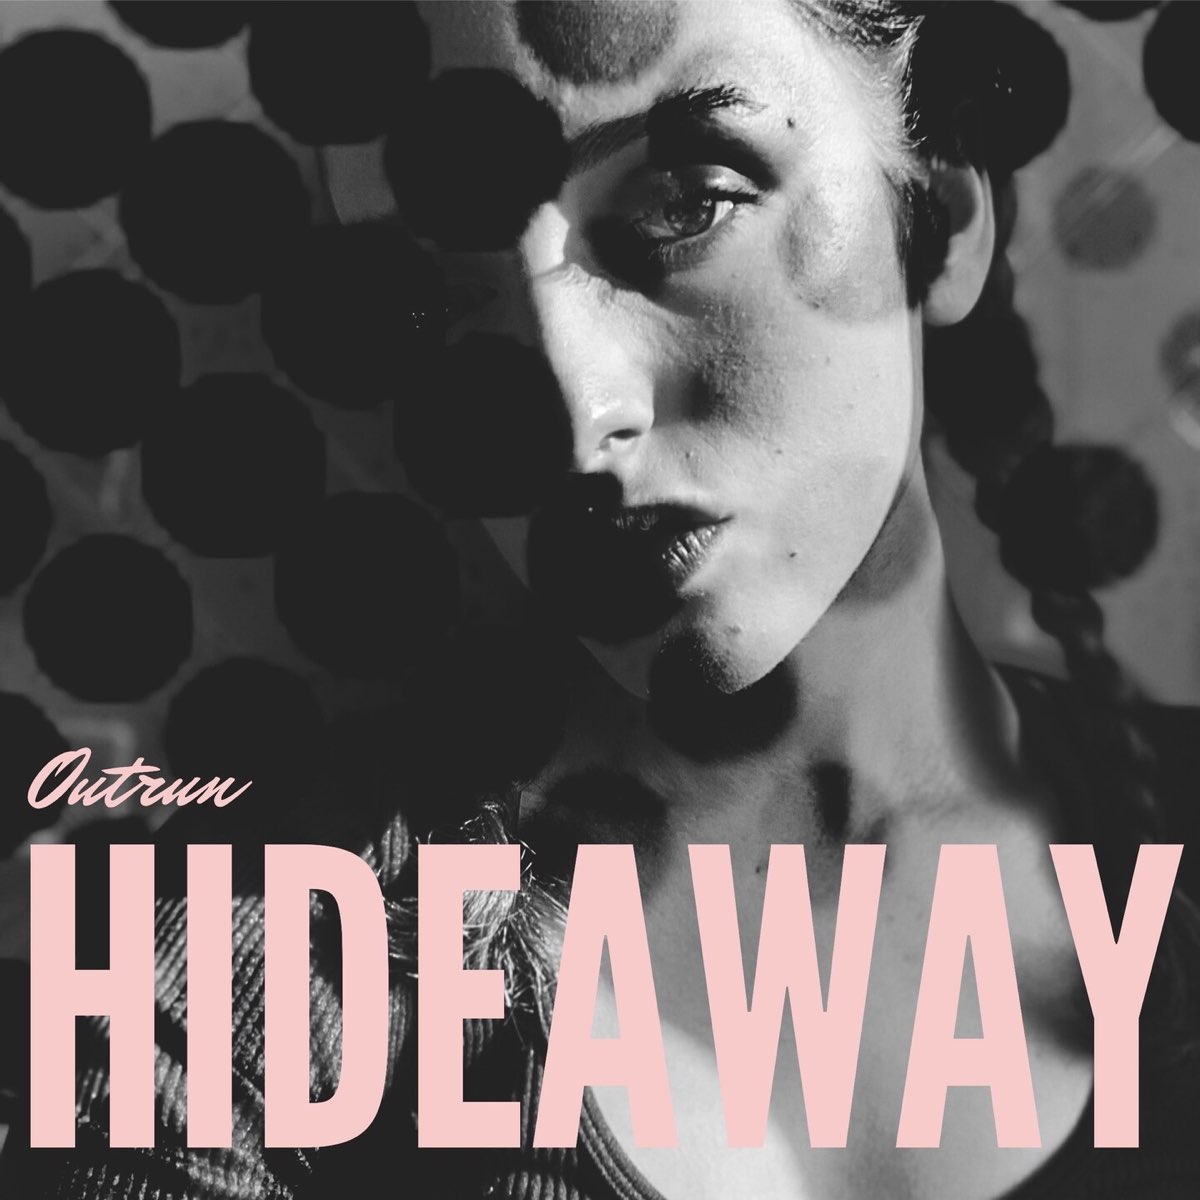 Hideaway - Album by Hideaway